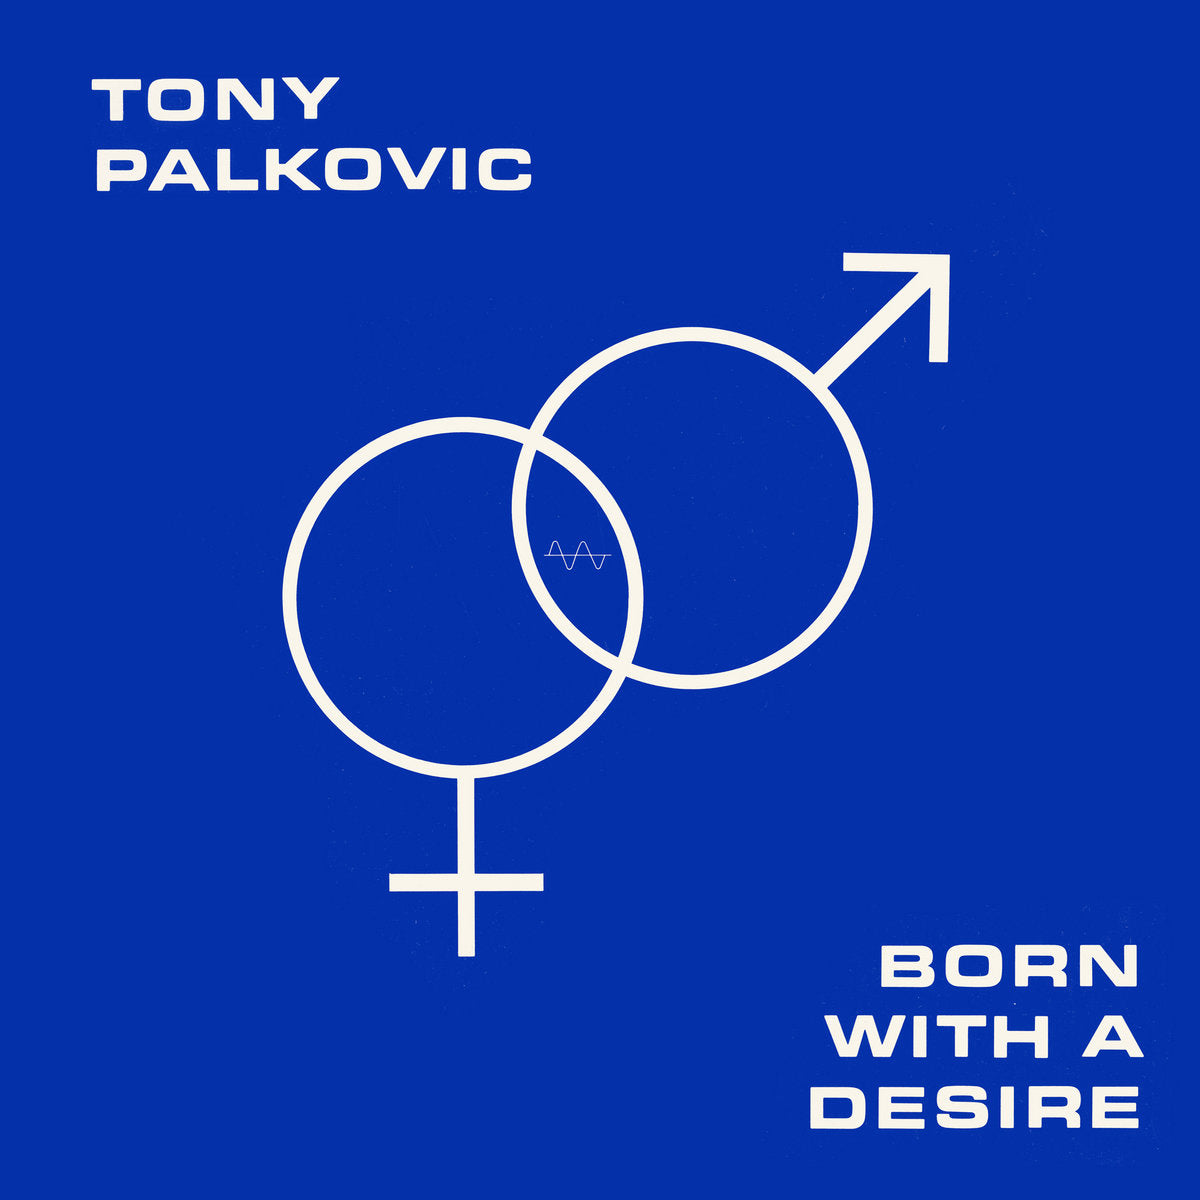 TONY PALKOVIC 'BORN WITH A DESIRE'